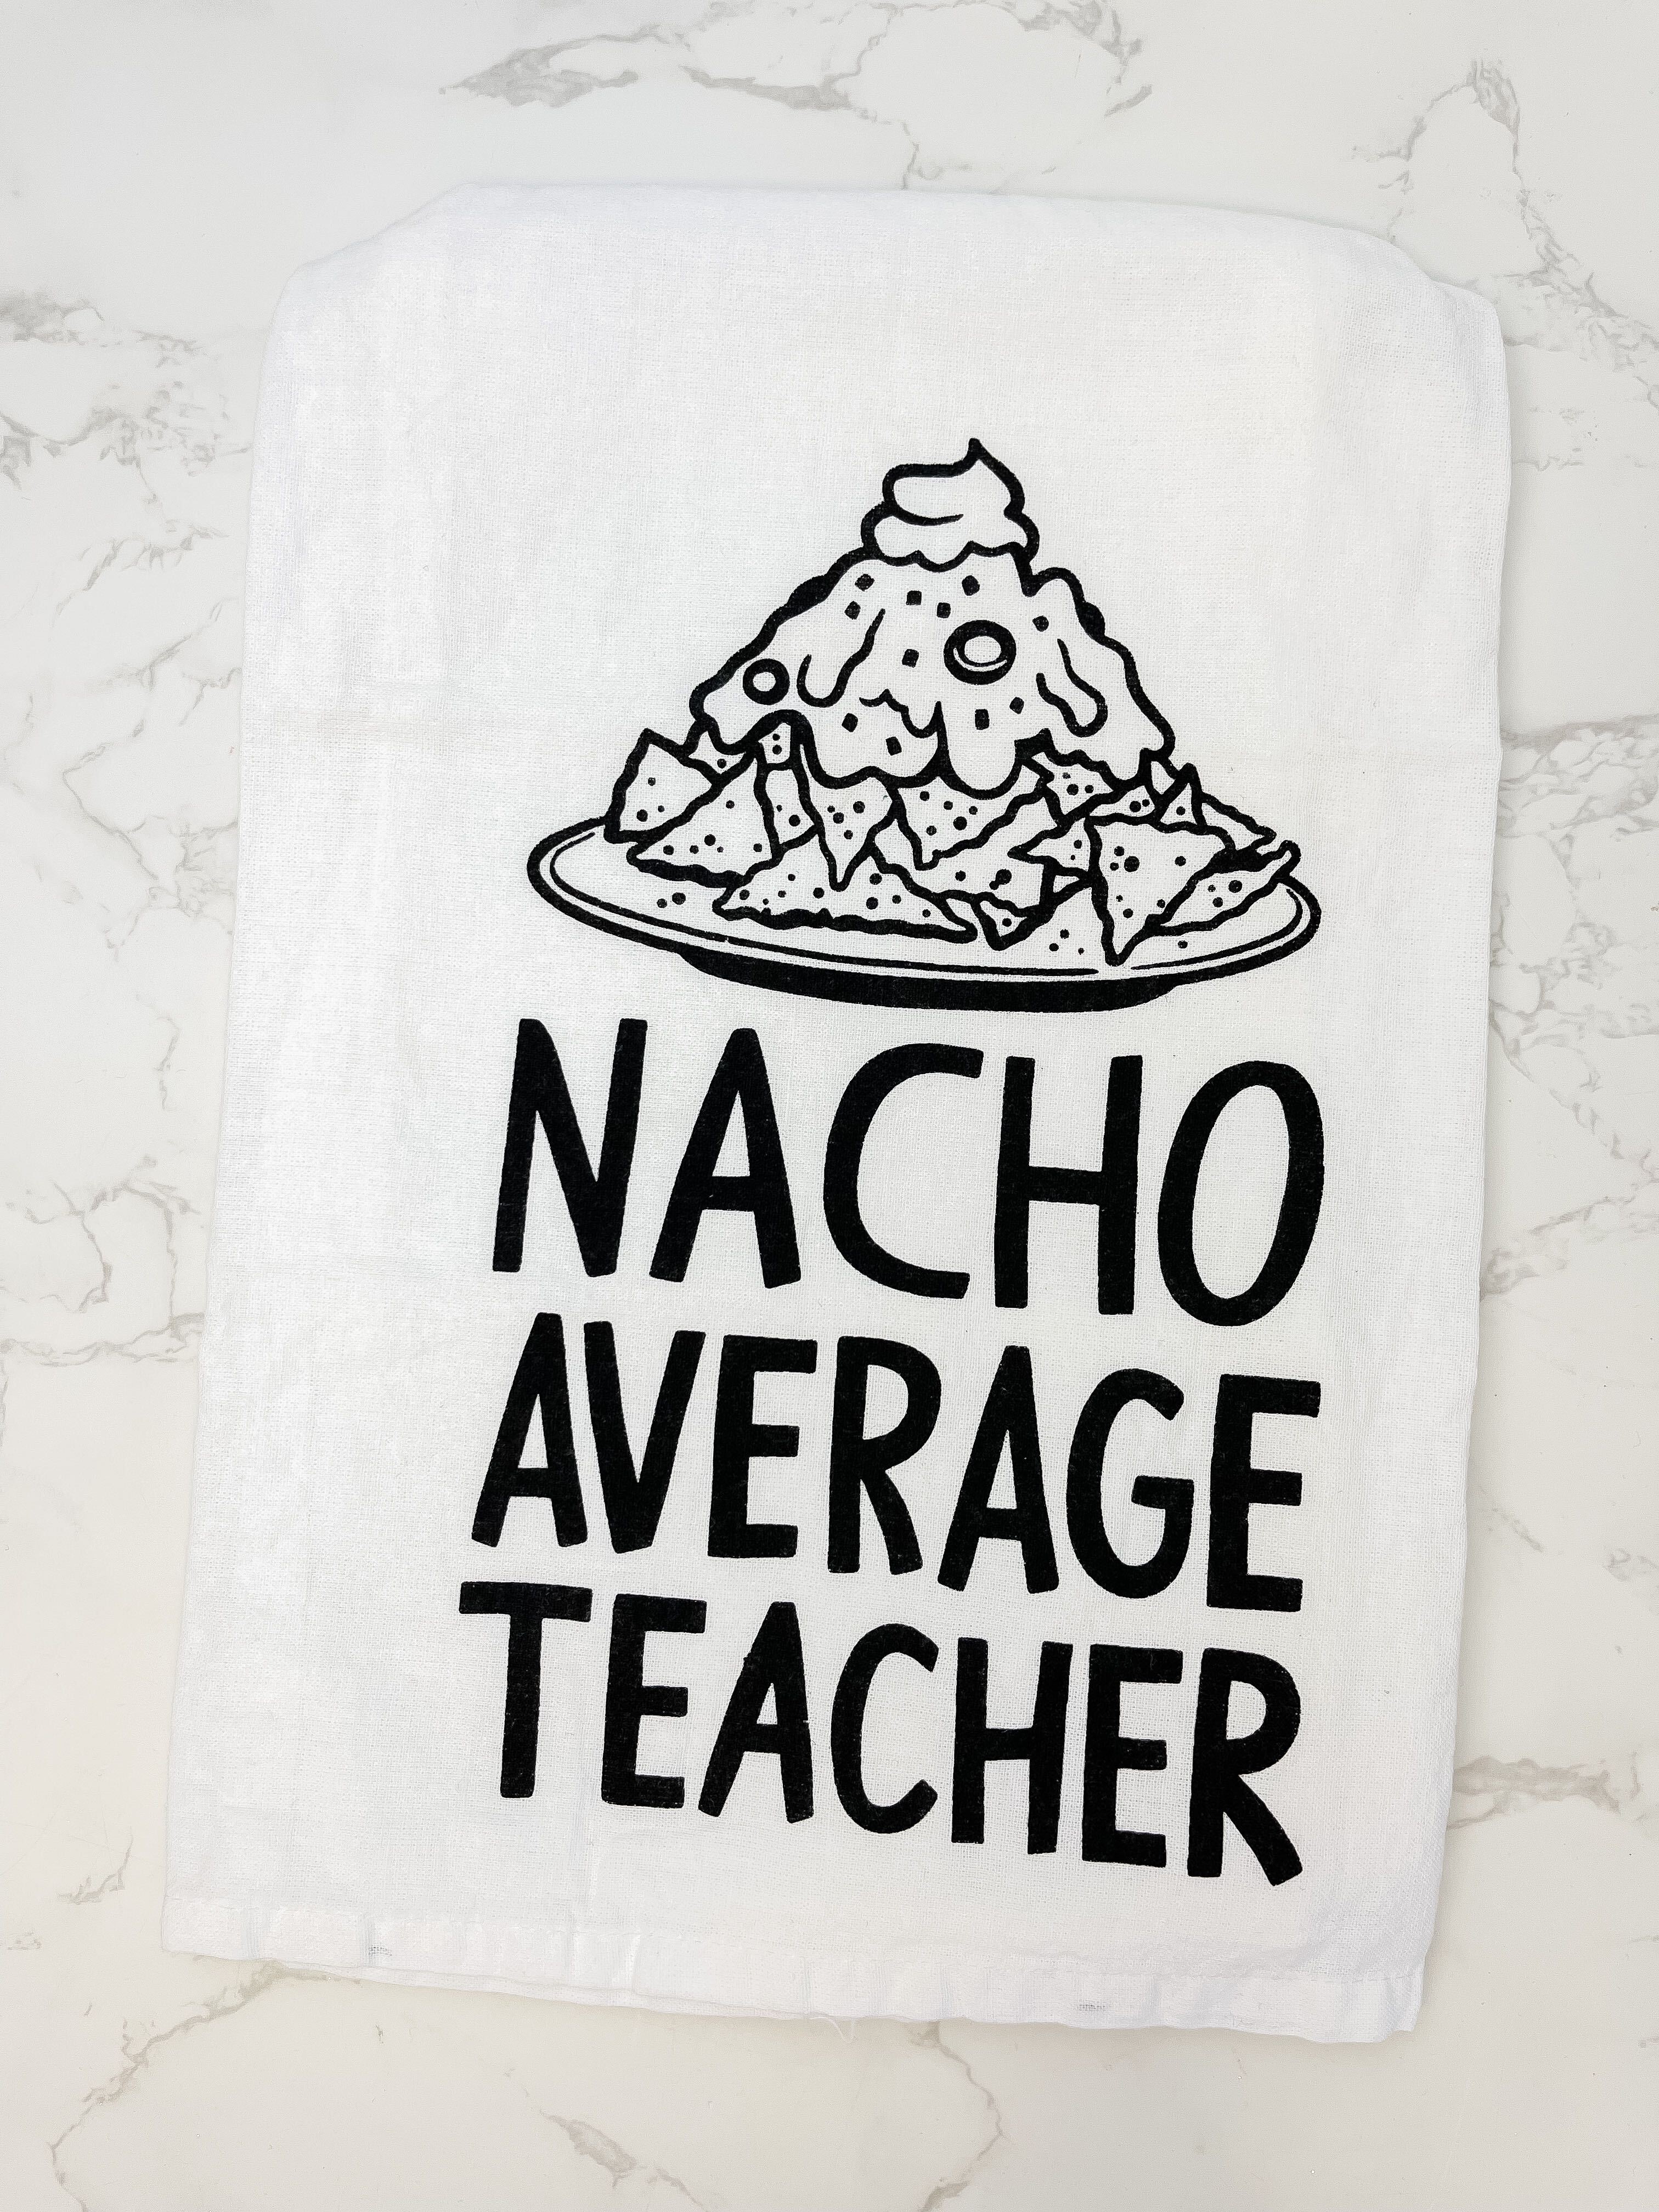 'Nacho Average Teacher' Kitchen Towel